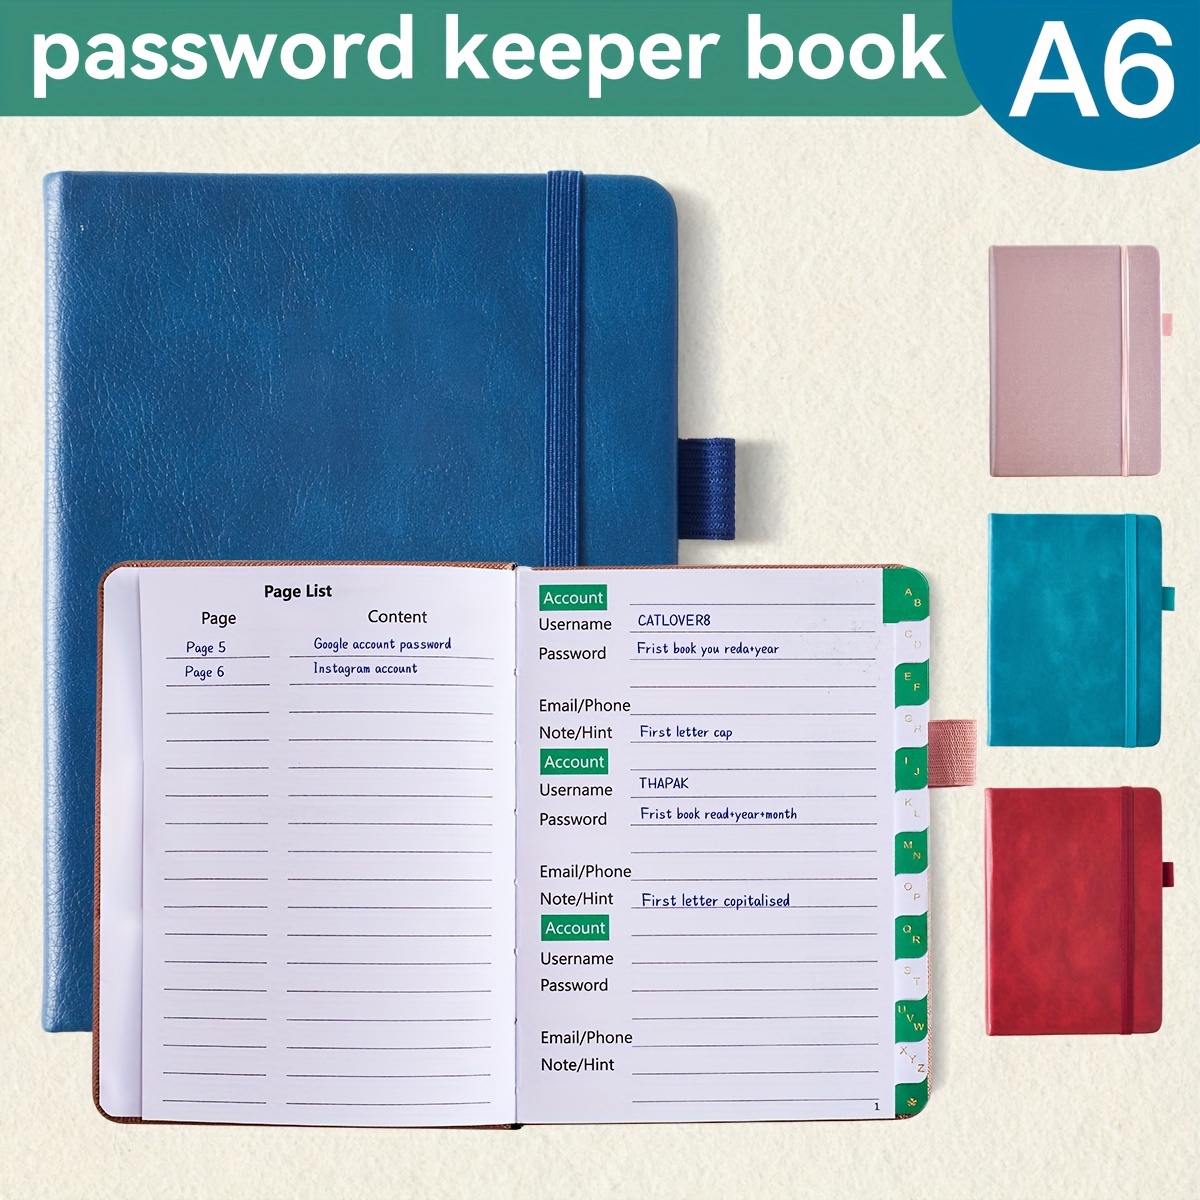 A6 Libro Password Schede Alfabetiche Ottimo Custode Password